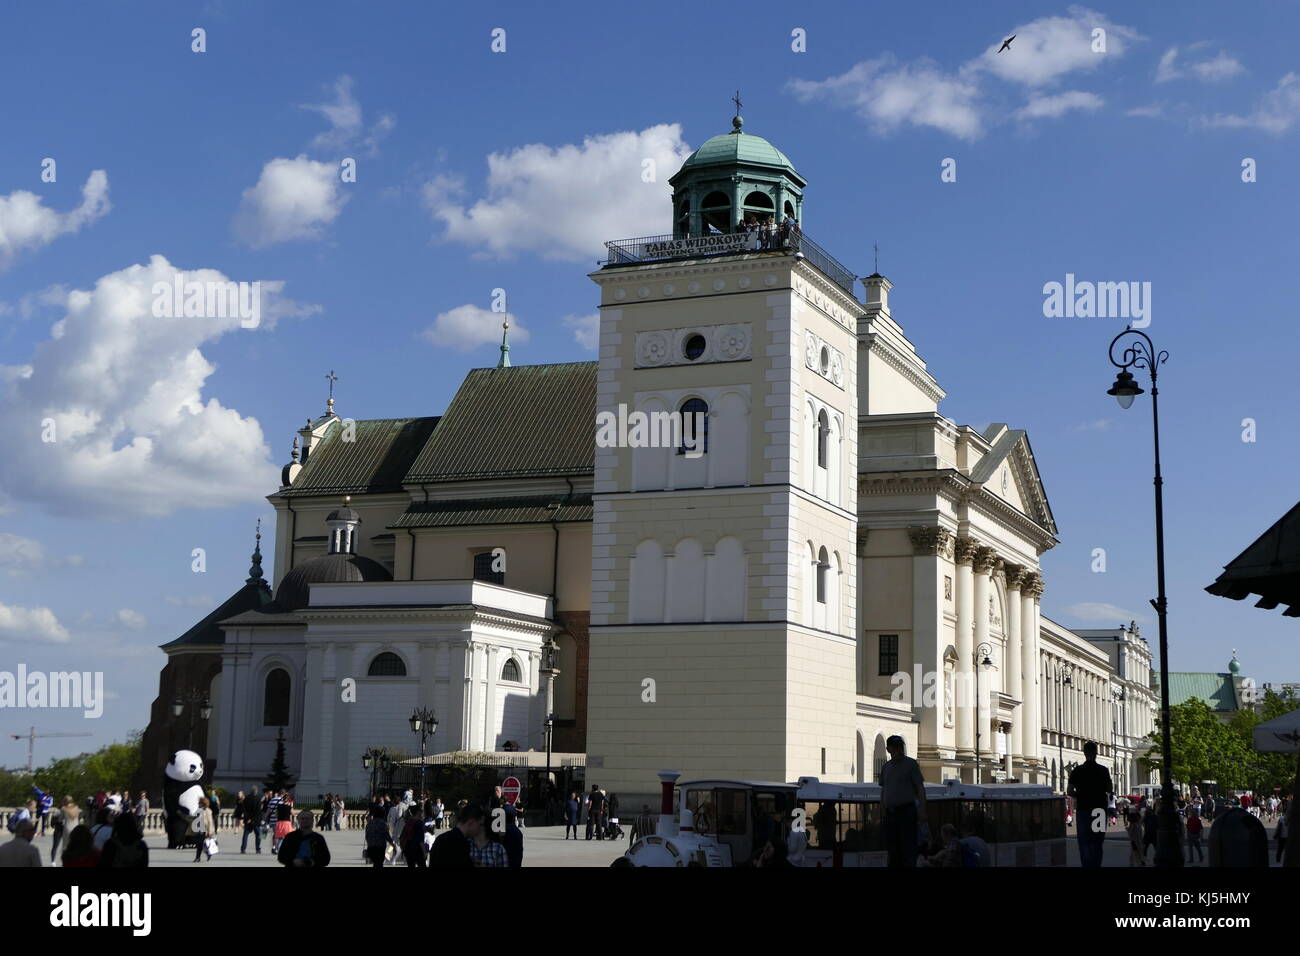 L'église Sainte-Anne (Sw. Anny) est une église dans le centre historique de Varsovie, Pologne, à côté de la Place du Château. Elle a une façade néoclassique, et haut-intérieur baroque . L'église compte parmi les plus anciens bâtiments de Varsovie. Au fil du temps, il a connu de nombreuses reconstructions, entraînant dans son apparence actuelle, inchangée depuis 1788 Banque D'Images